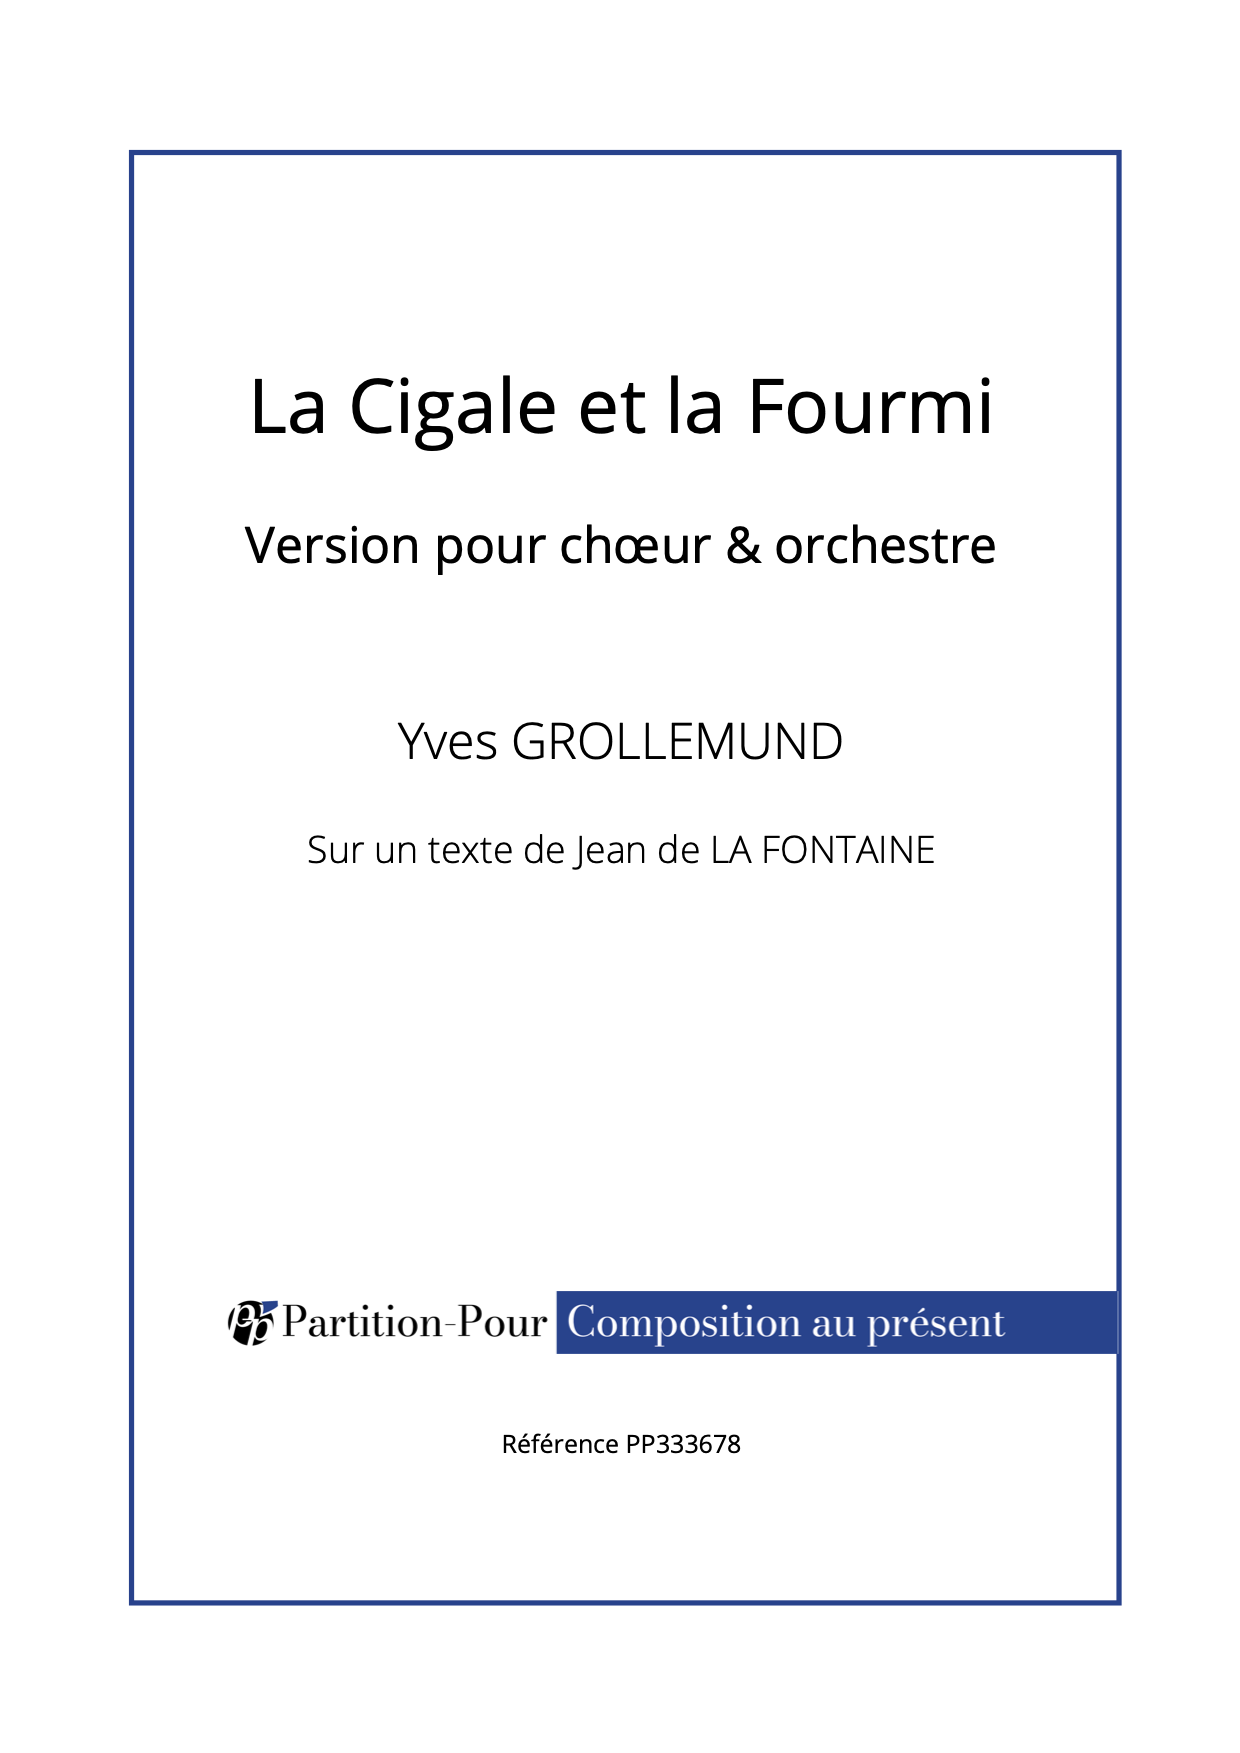 PP333678 - Grollemund Y - La cigale et la fourmi - chœur & orchestre -présentation